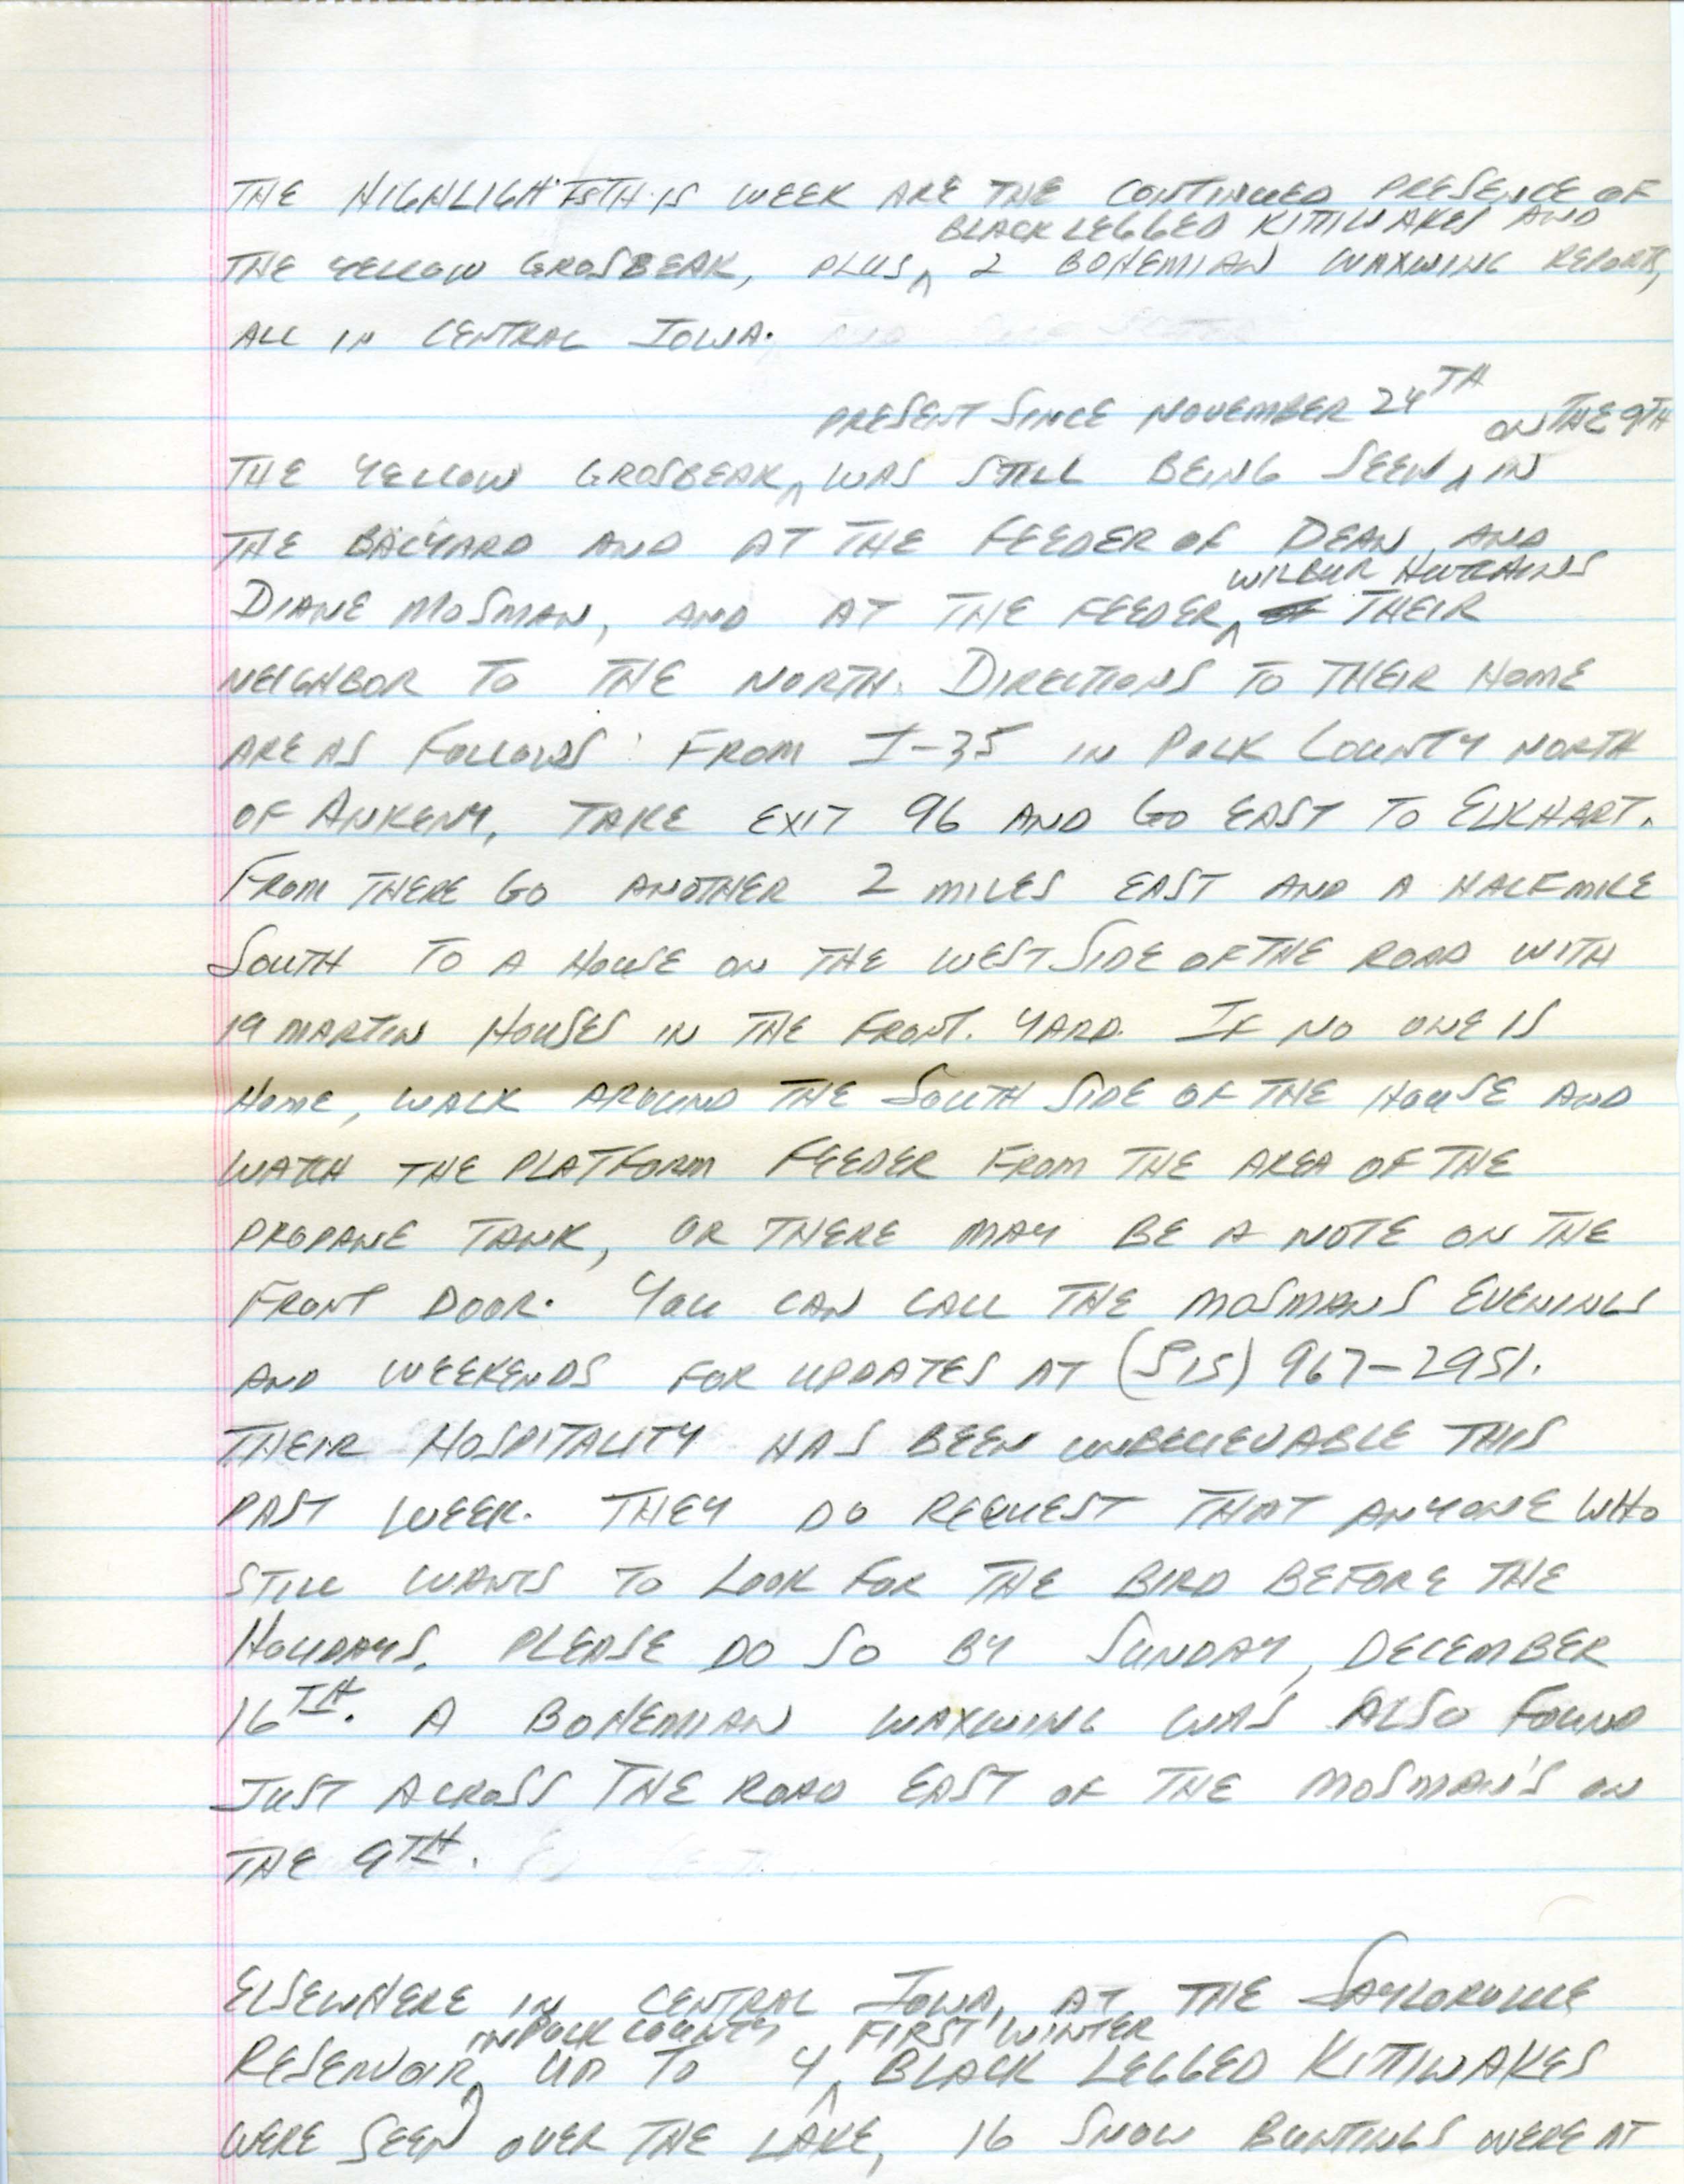 Iowa Birdline update, December 10, 1990, notes